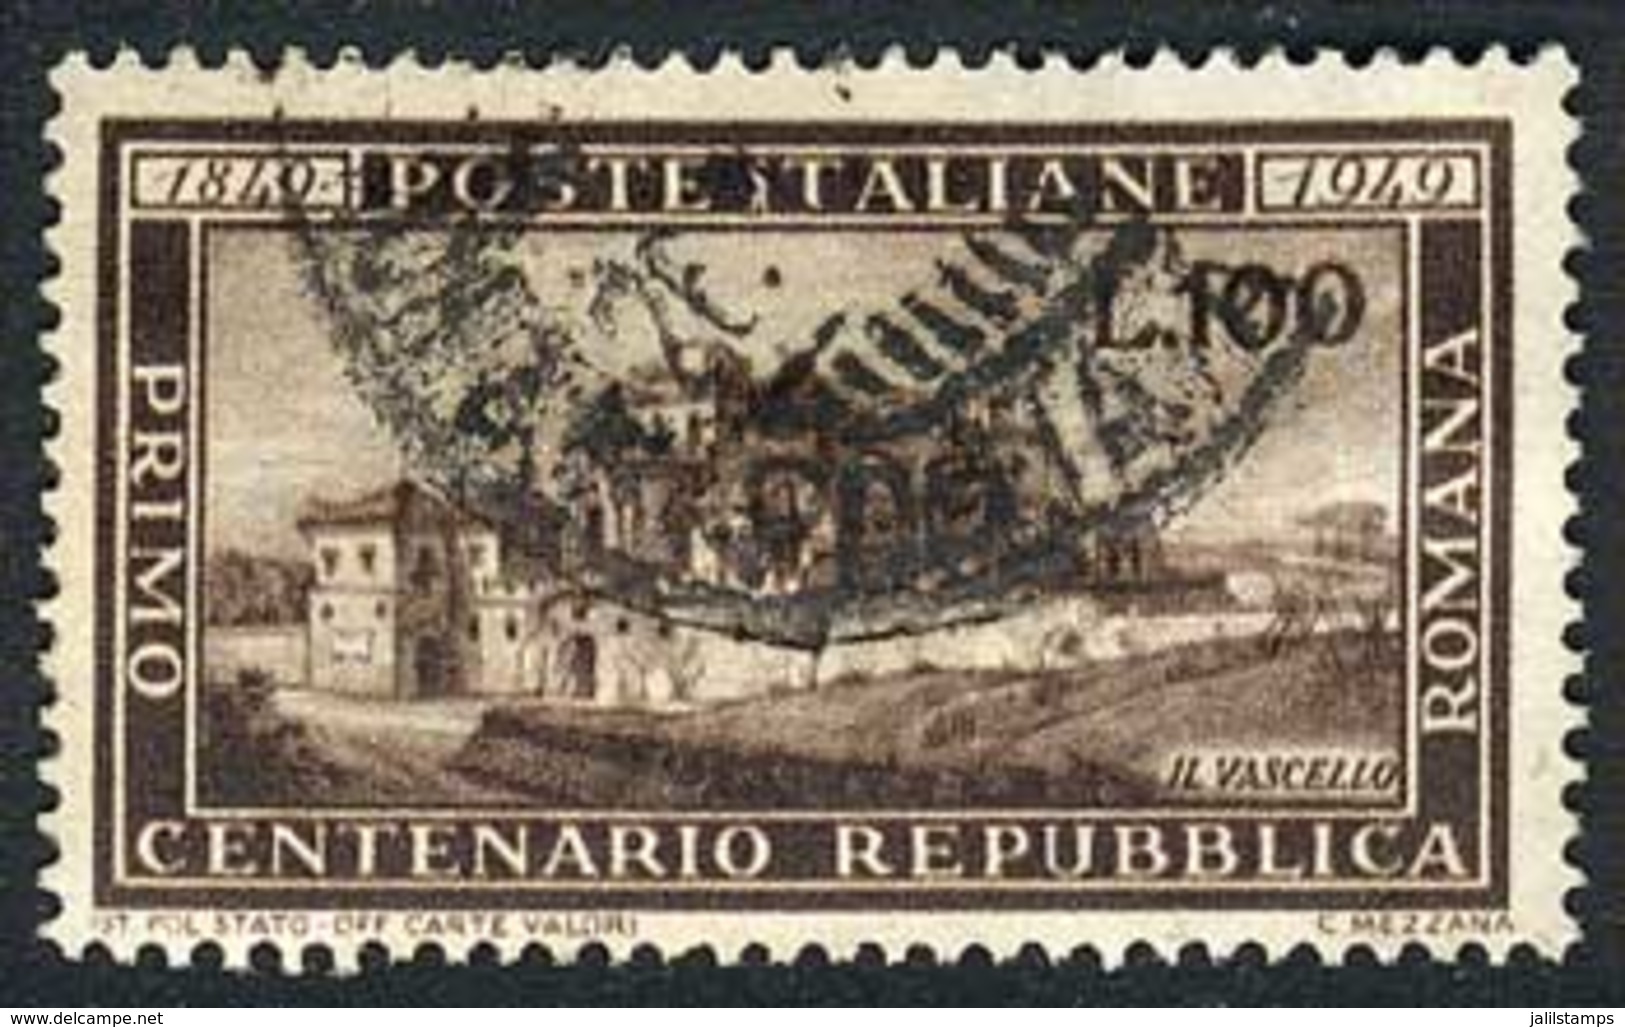 ITALY: Sc.518, 1949 100L. Repubblica Romana Used, VF Quality, Catalog Value US$125. - Non Classés